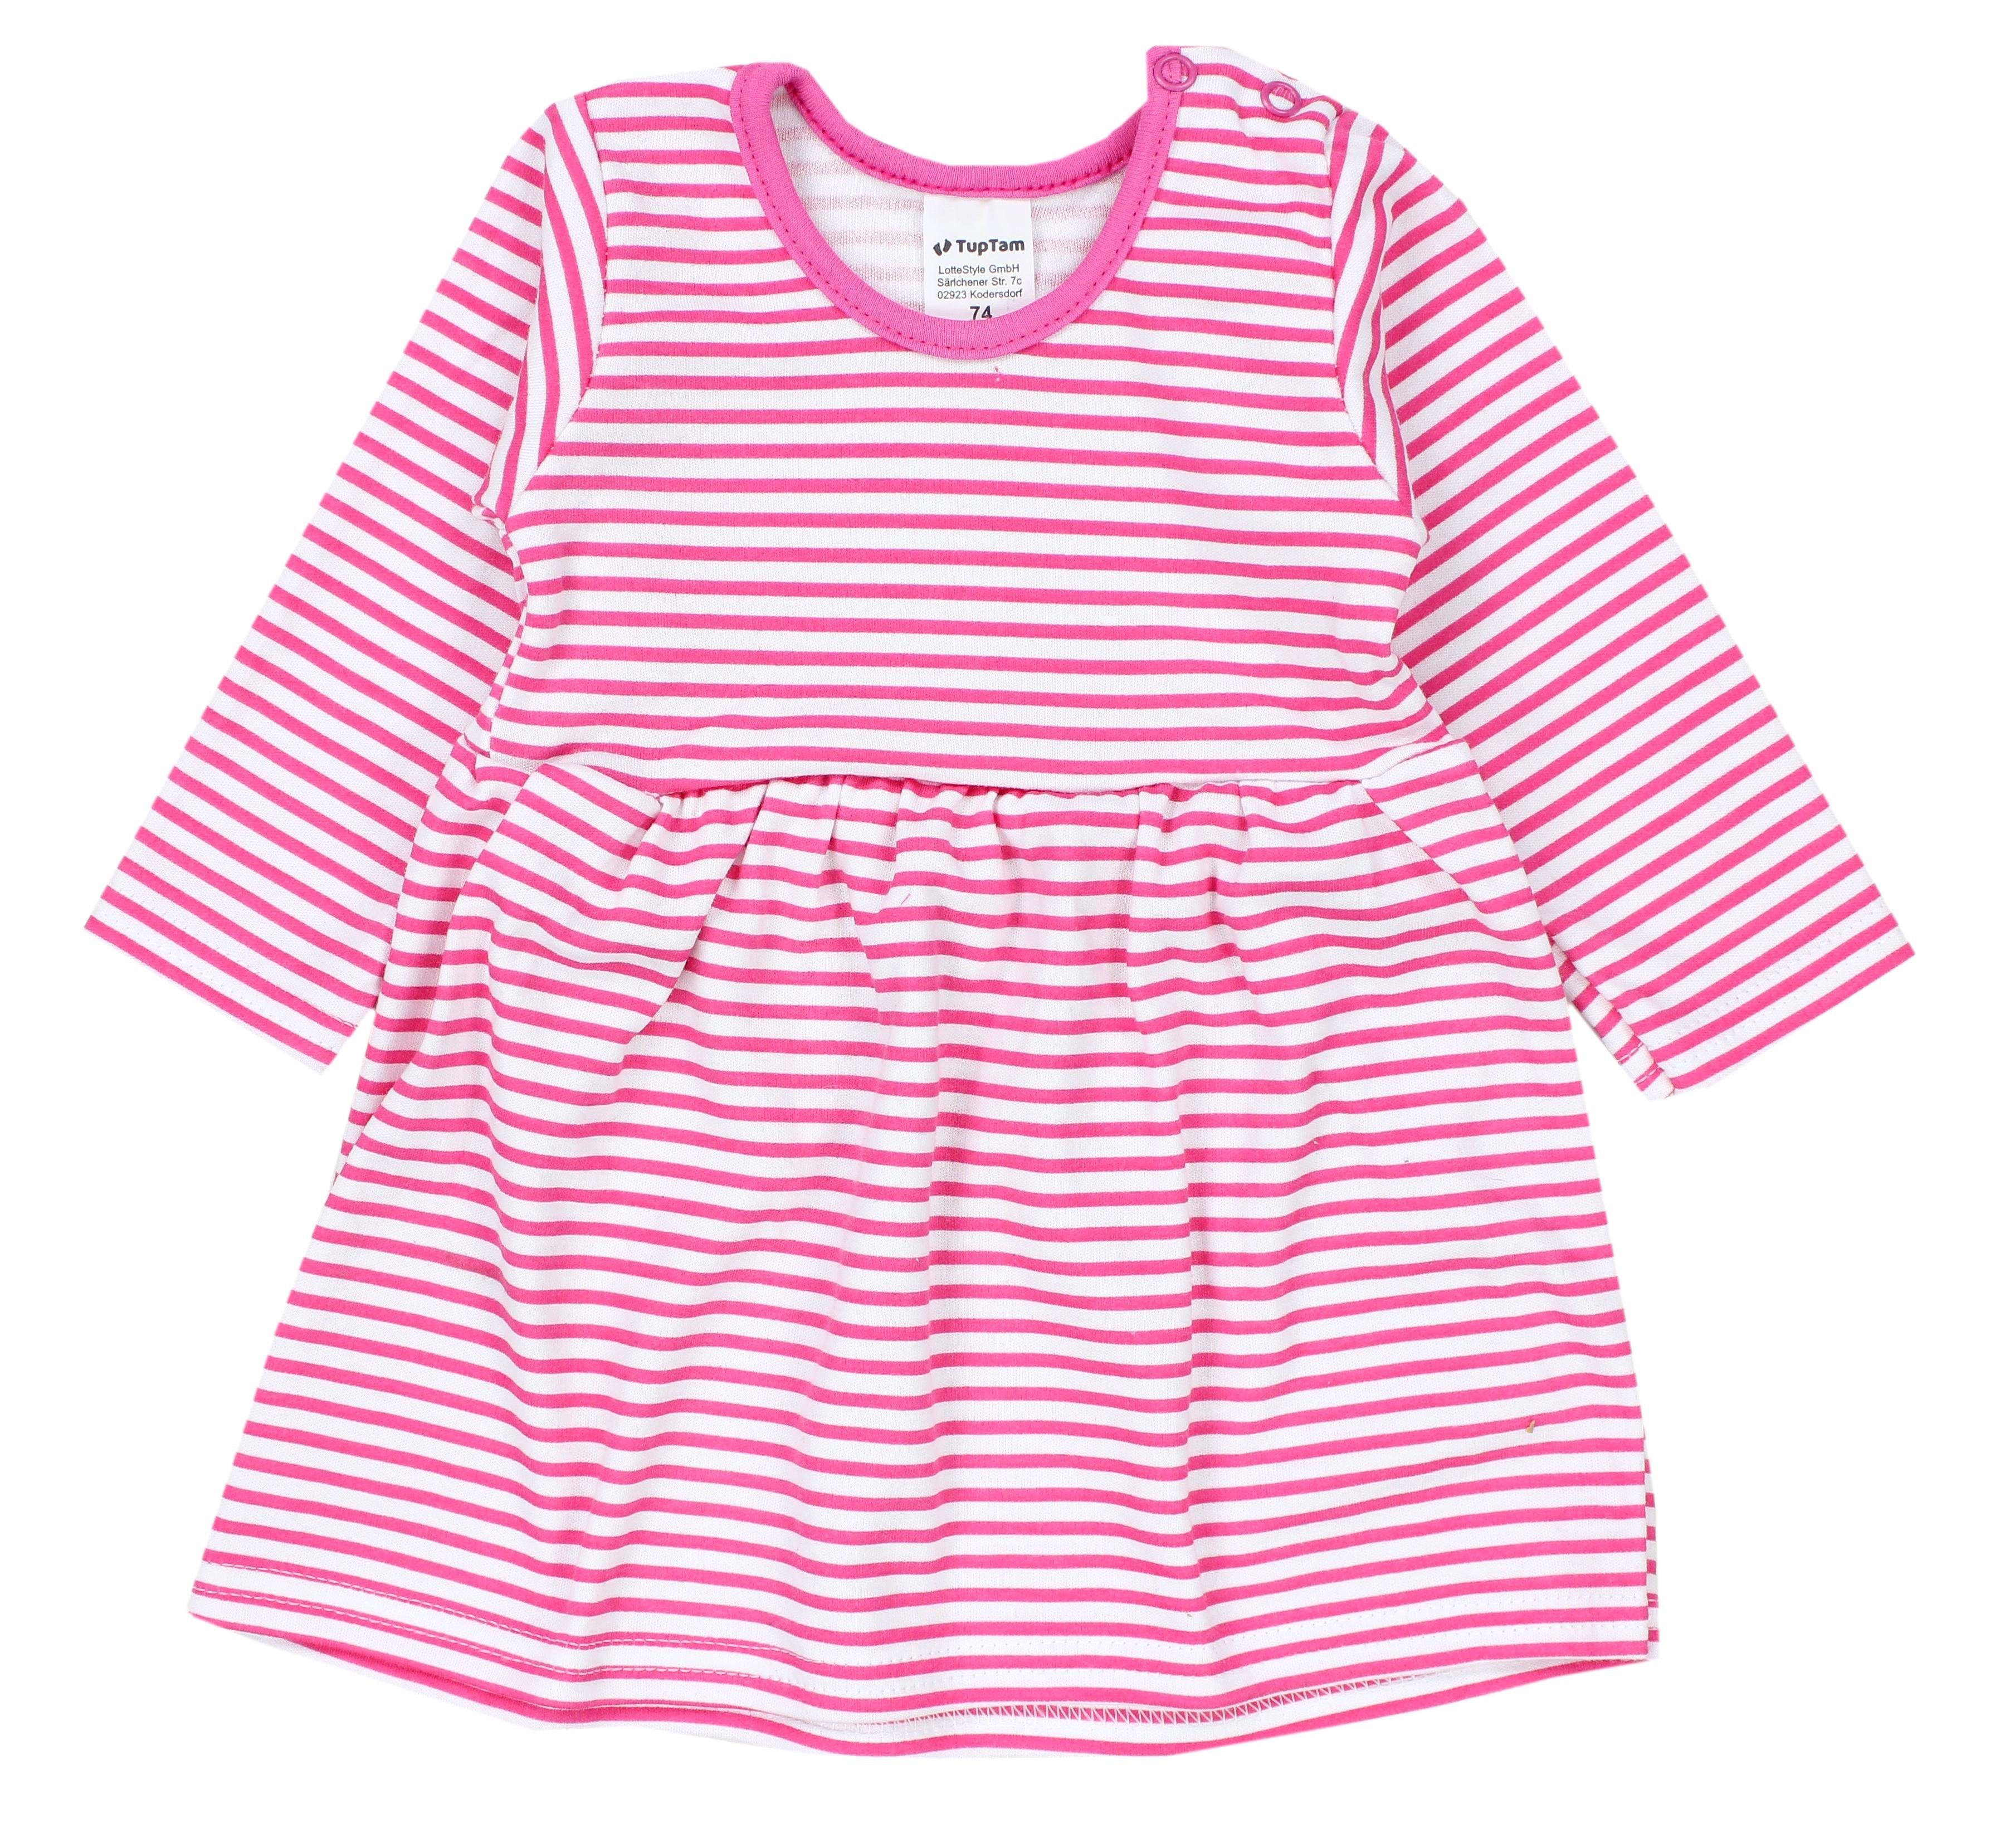 Tunika 3 Mädchen TupTam Farbenmix Pack 3er TupTam Kleinkind Kleid Tunikakleid Langarm Kurzarm Baby